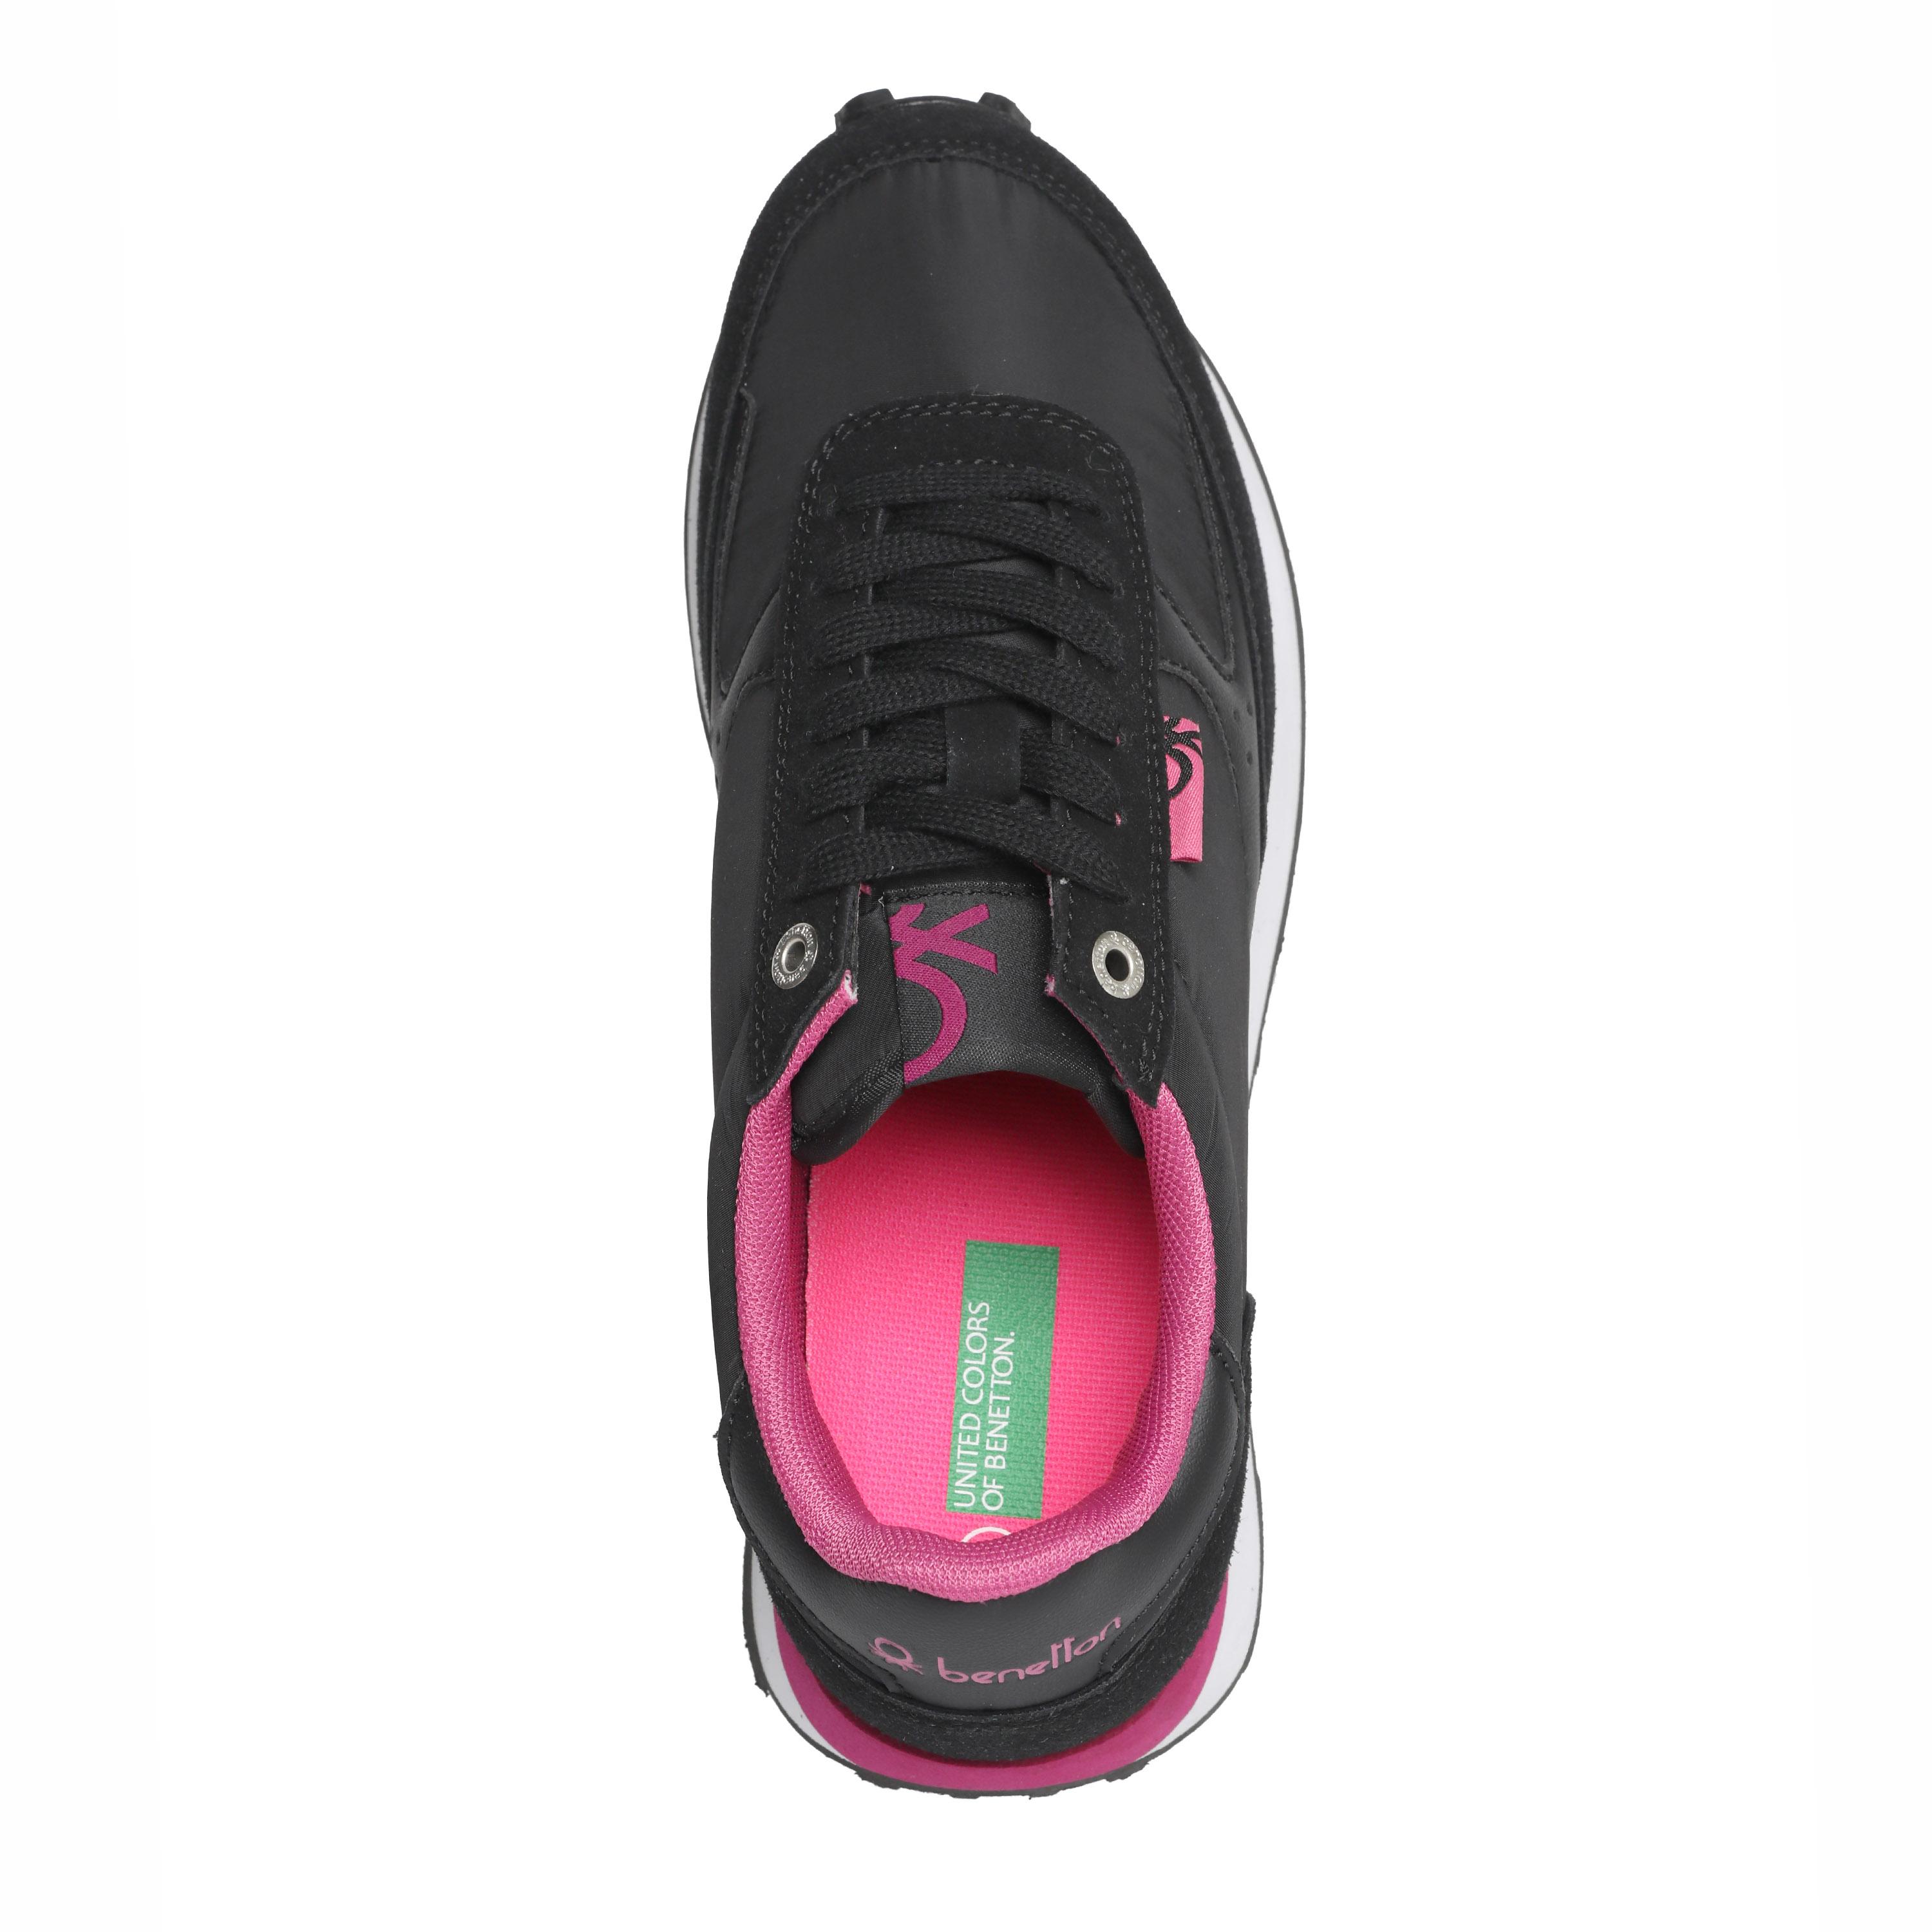 Женские кроссовки United Colors of Benetton, черные, цвет черный, размер 37 - фото 4